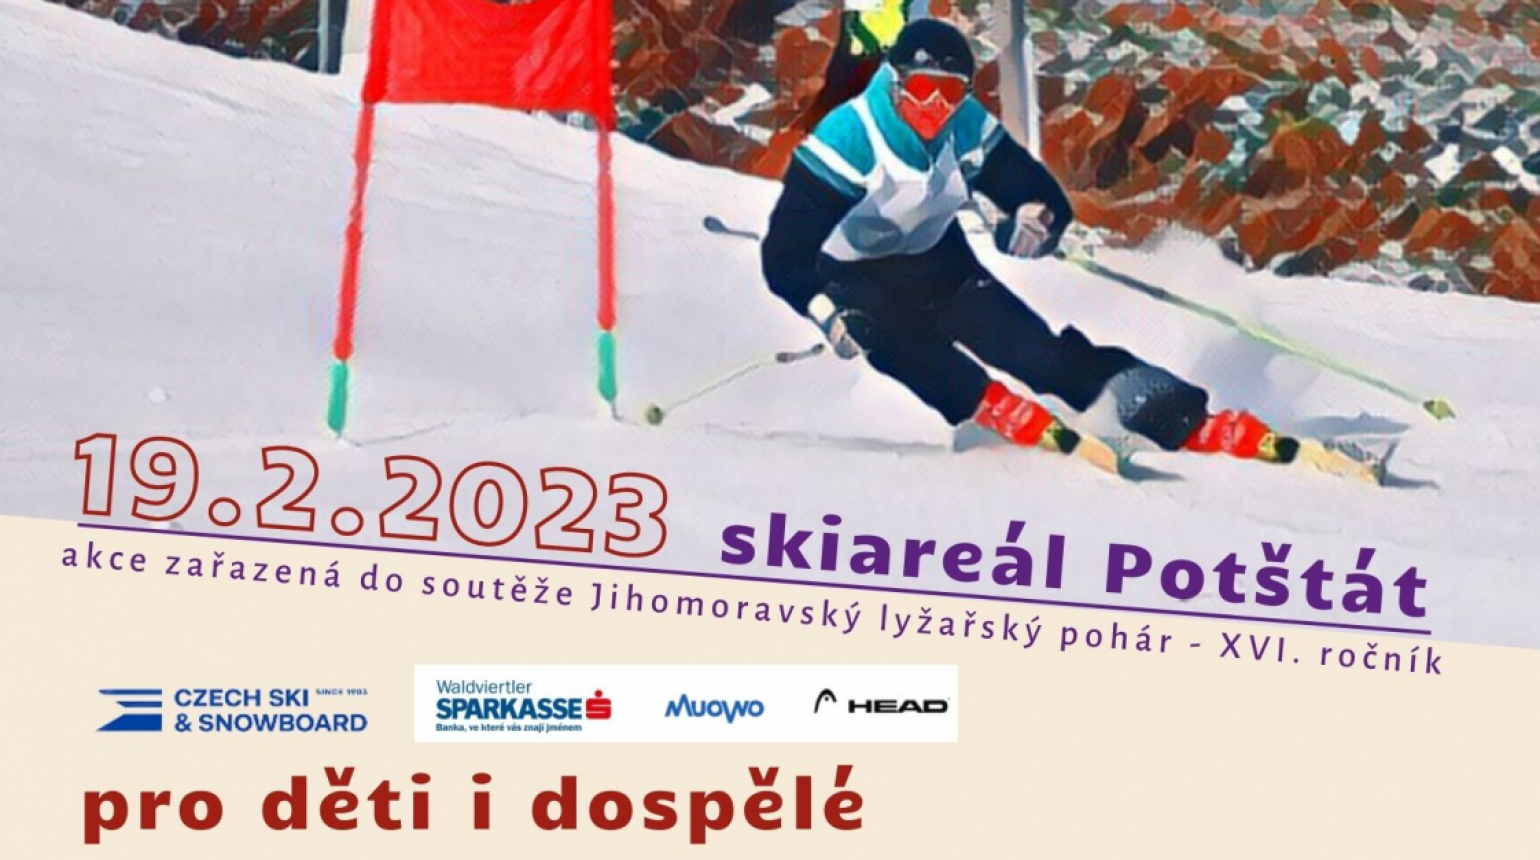 VEŘEJNÝ ZÁVOD V OBŘÍM SLALOMU 2023 - Jihomoravský lyžářský pohár 2022/2023